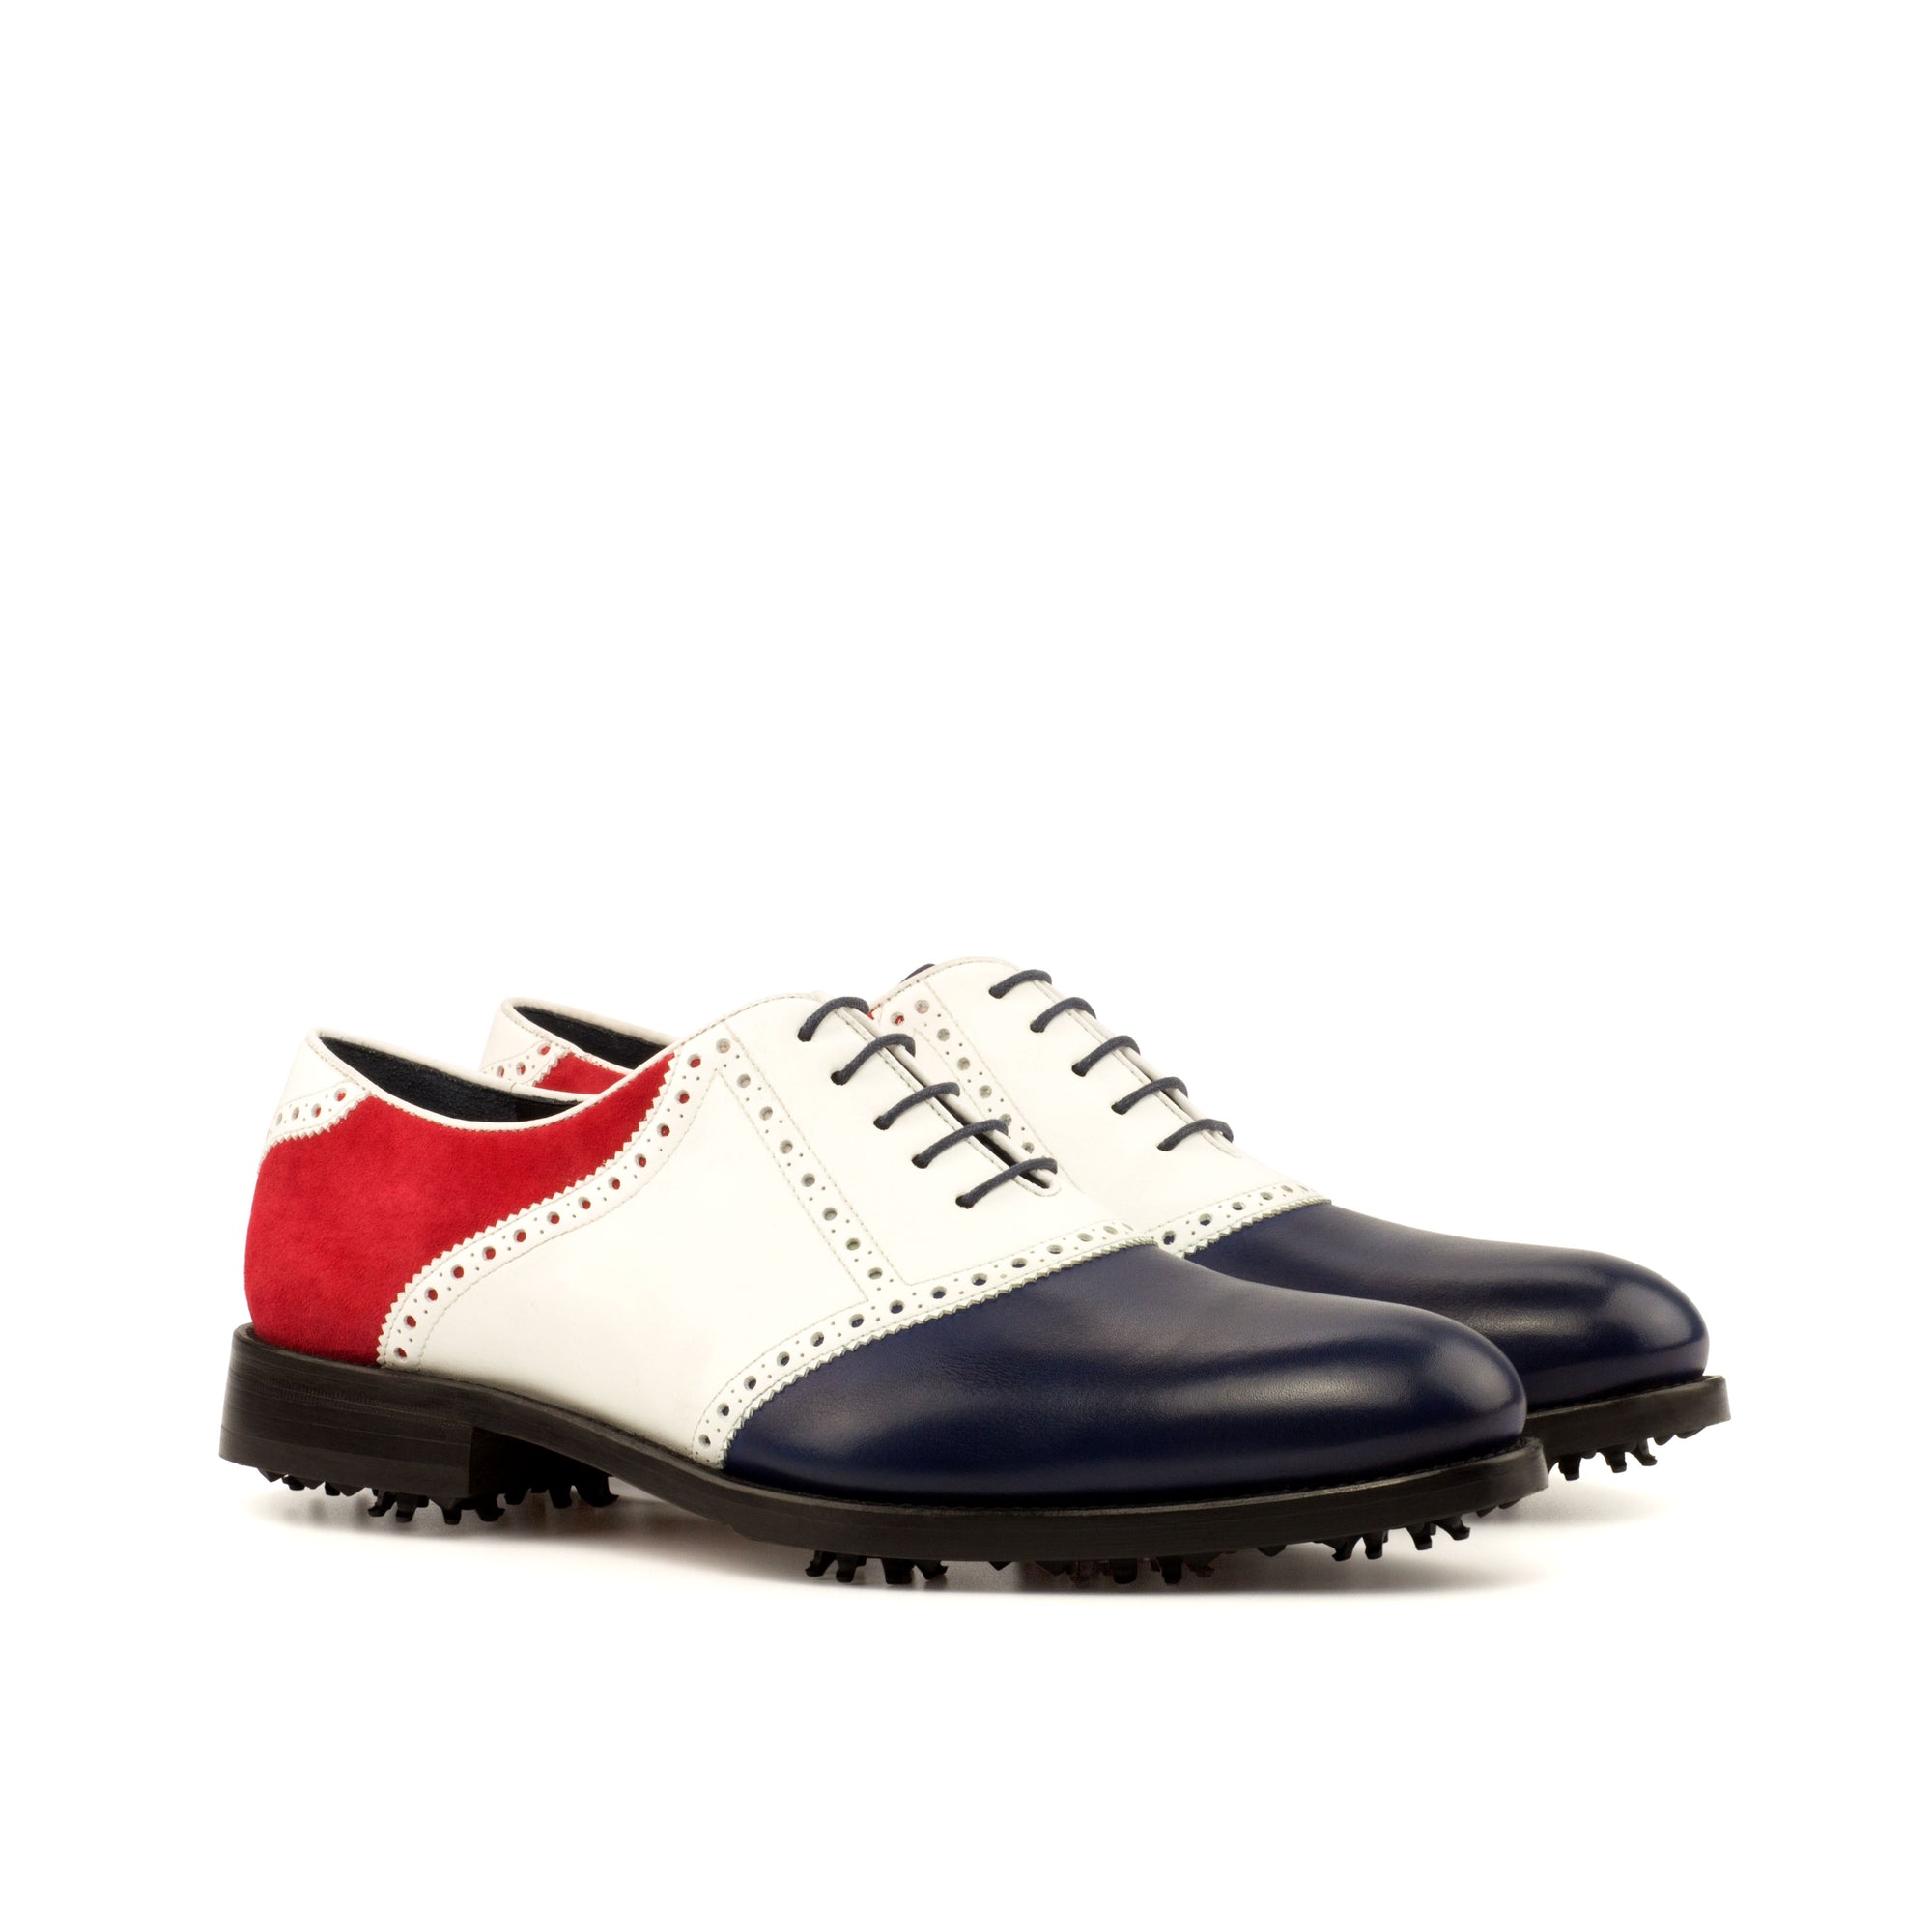 Chaussures de golf personnalisées - USA Flag jusqu'à la taille US 16 !